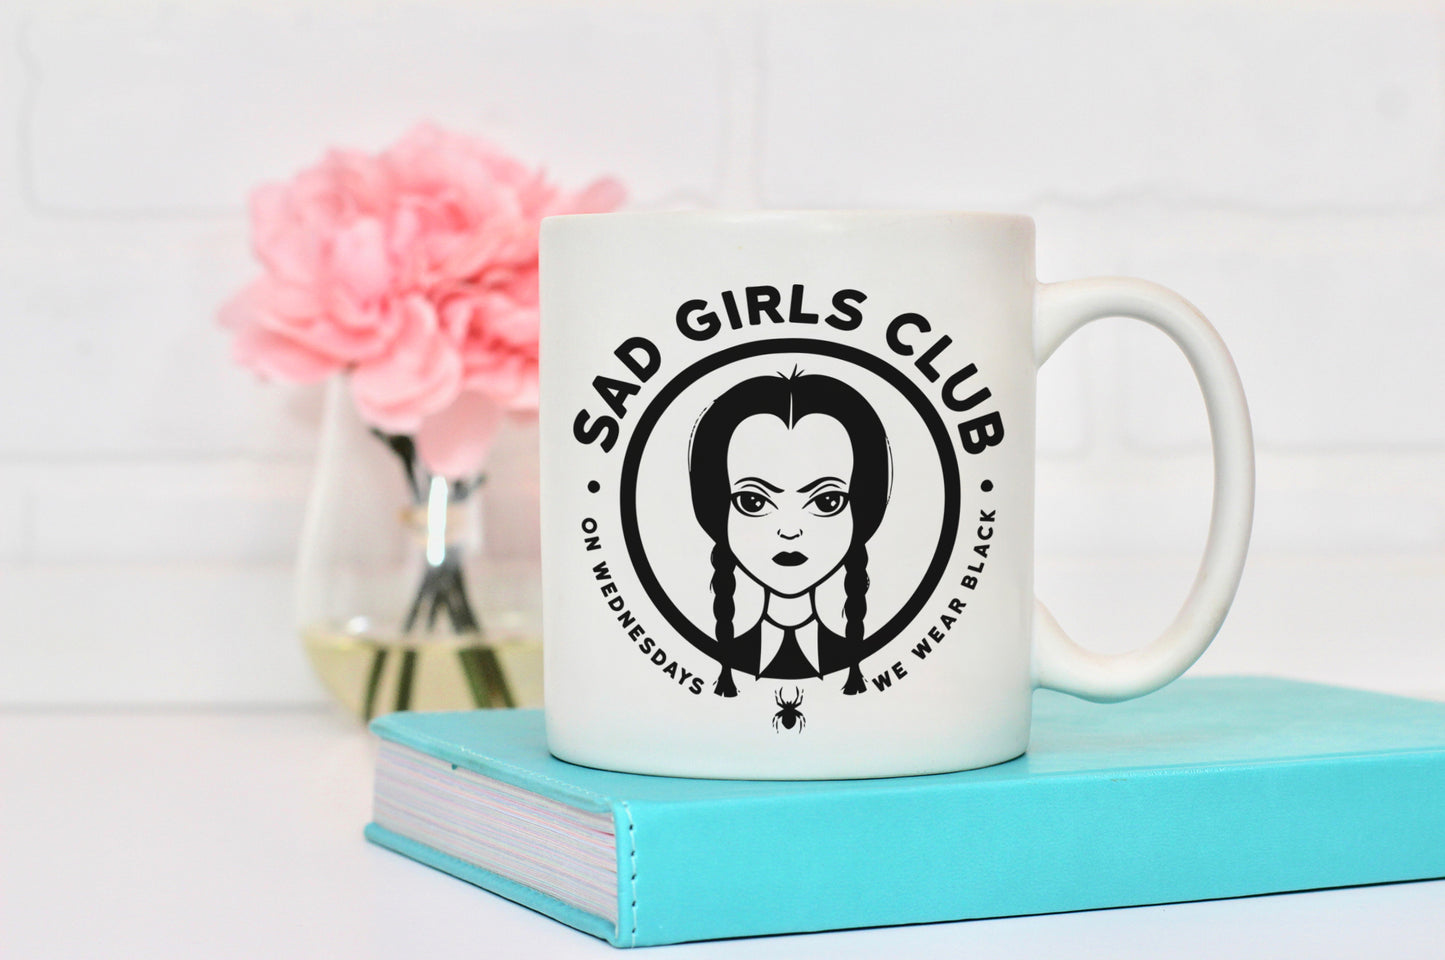 Sad Girl's Ceramic Mug